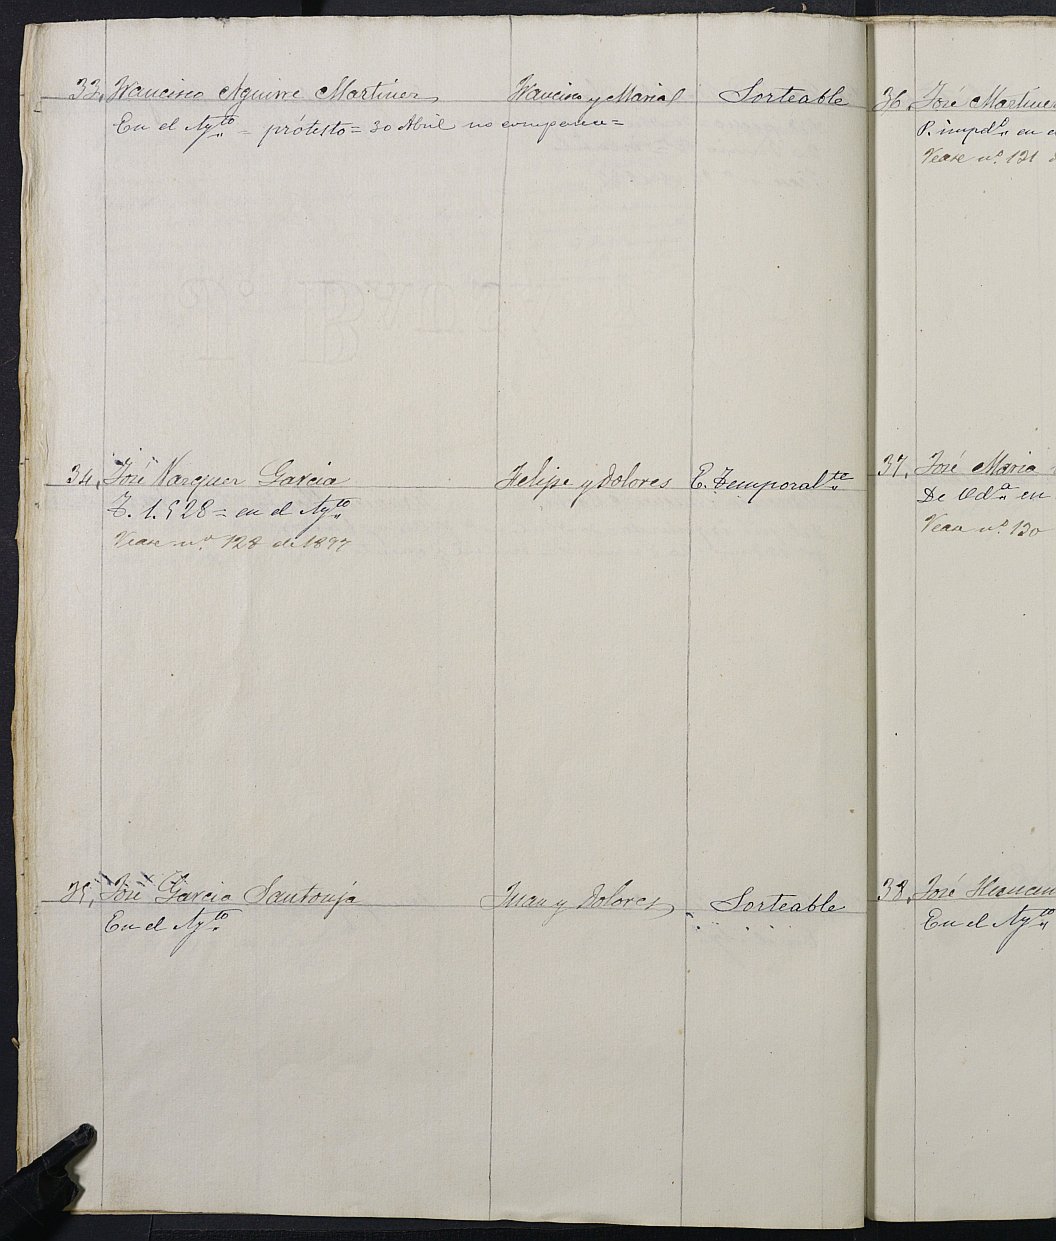 Relación de individuos declarados soldados e ingresados en Caja de la Sección 2ª del Ayuntamiento de Cartagena de 1896